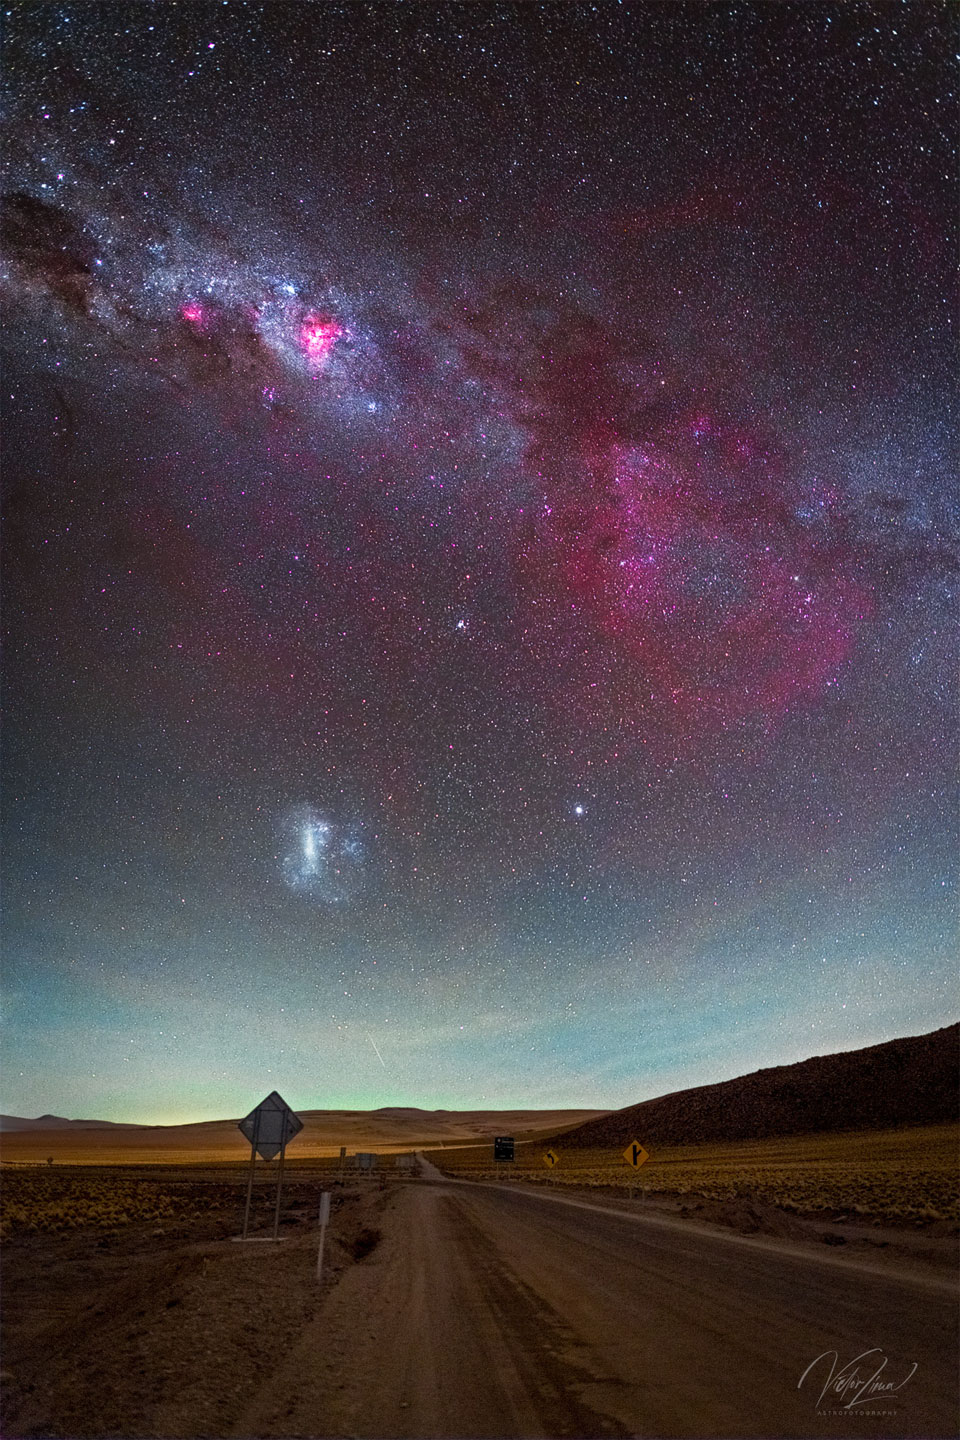 Opisywane zdjęcie pokazuje wspaniały obraz nieba z brązową
pustynną drogą na pierwszym planie oraz niebem zawierającym pas
Drogi Mlecznej uzupełniony wielką czerwoną poświatą po prawej,
którą jest ciemna Mgławica Gum. Widoczna jest także galaktyka WOM.
Zobacz opis. Po kliknięciu obrazka załaduje się wersja
 o największej dostępnej rozdzielczości.